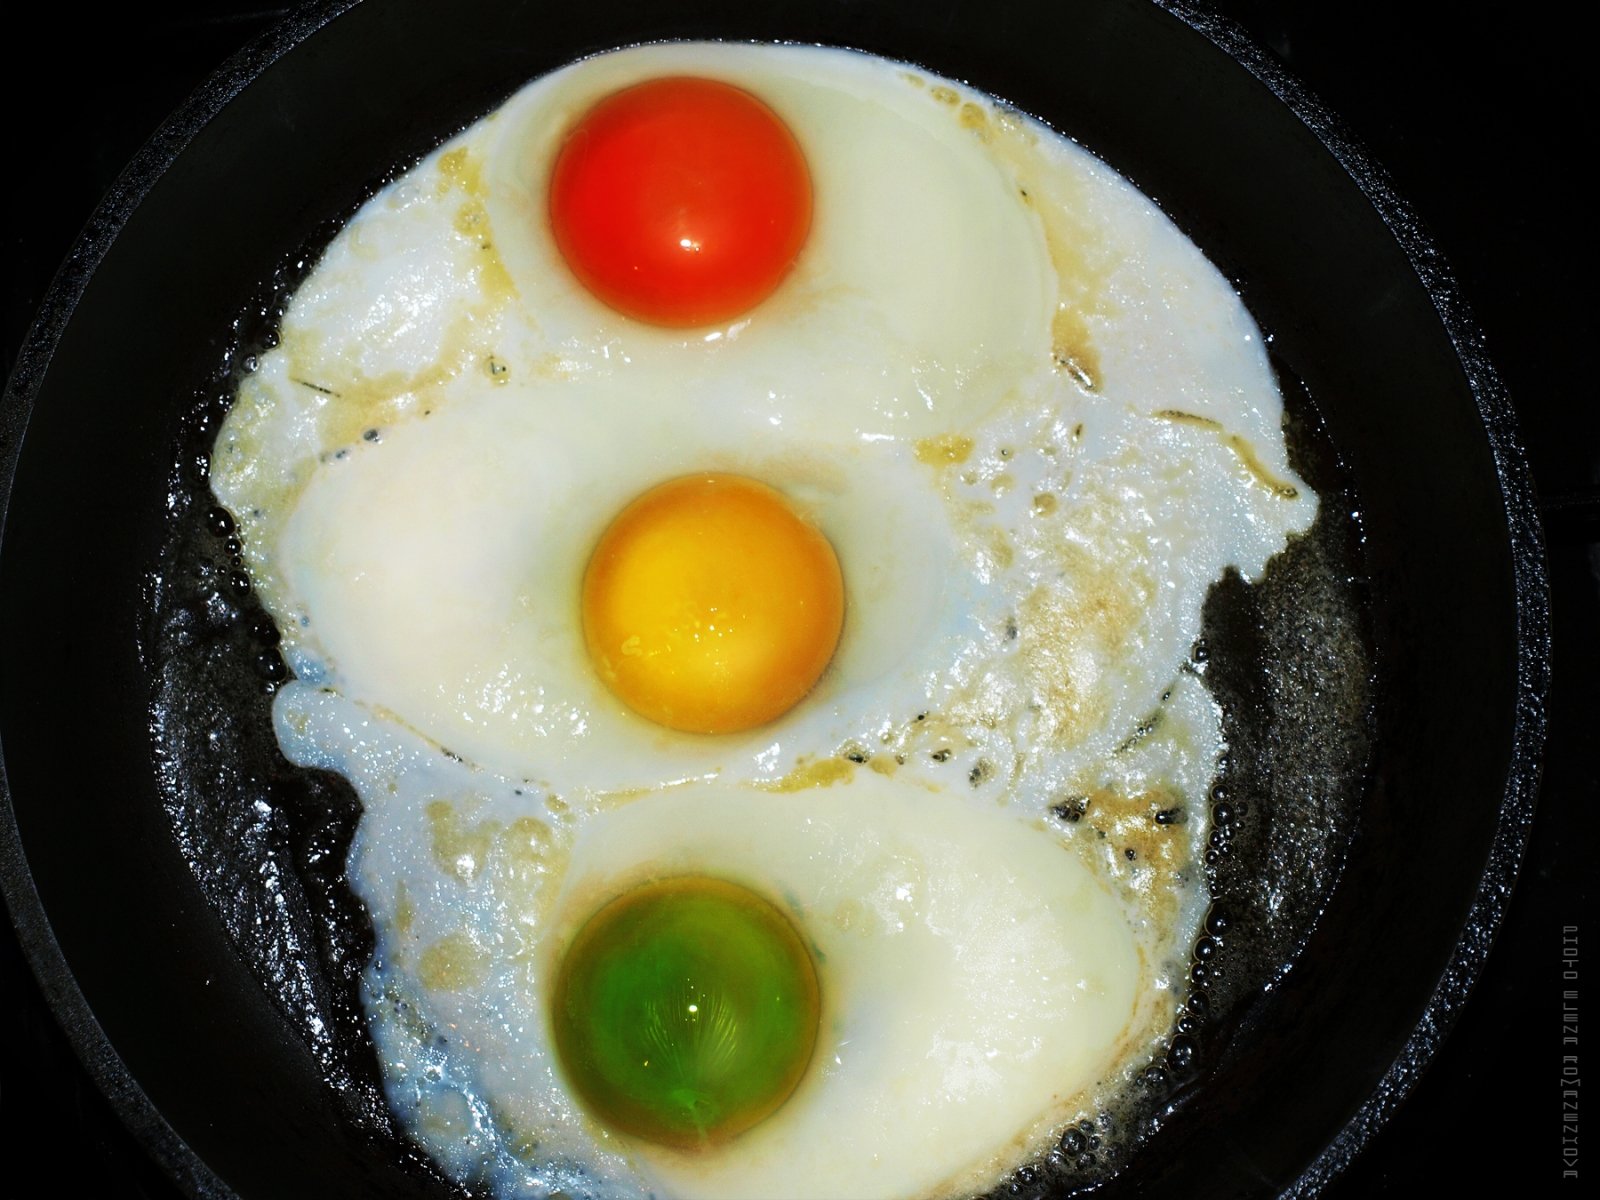 sygnalizacja świetlna pyszne jajecznica kolor